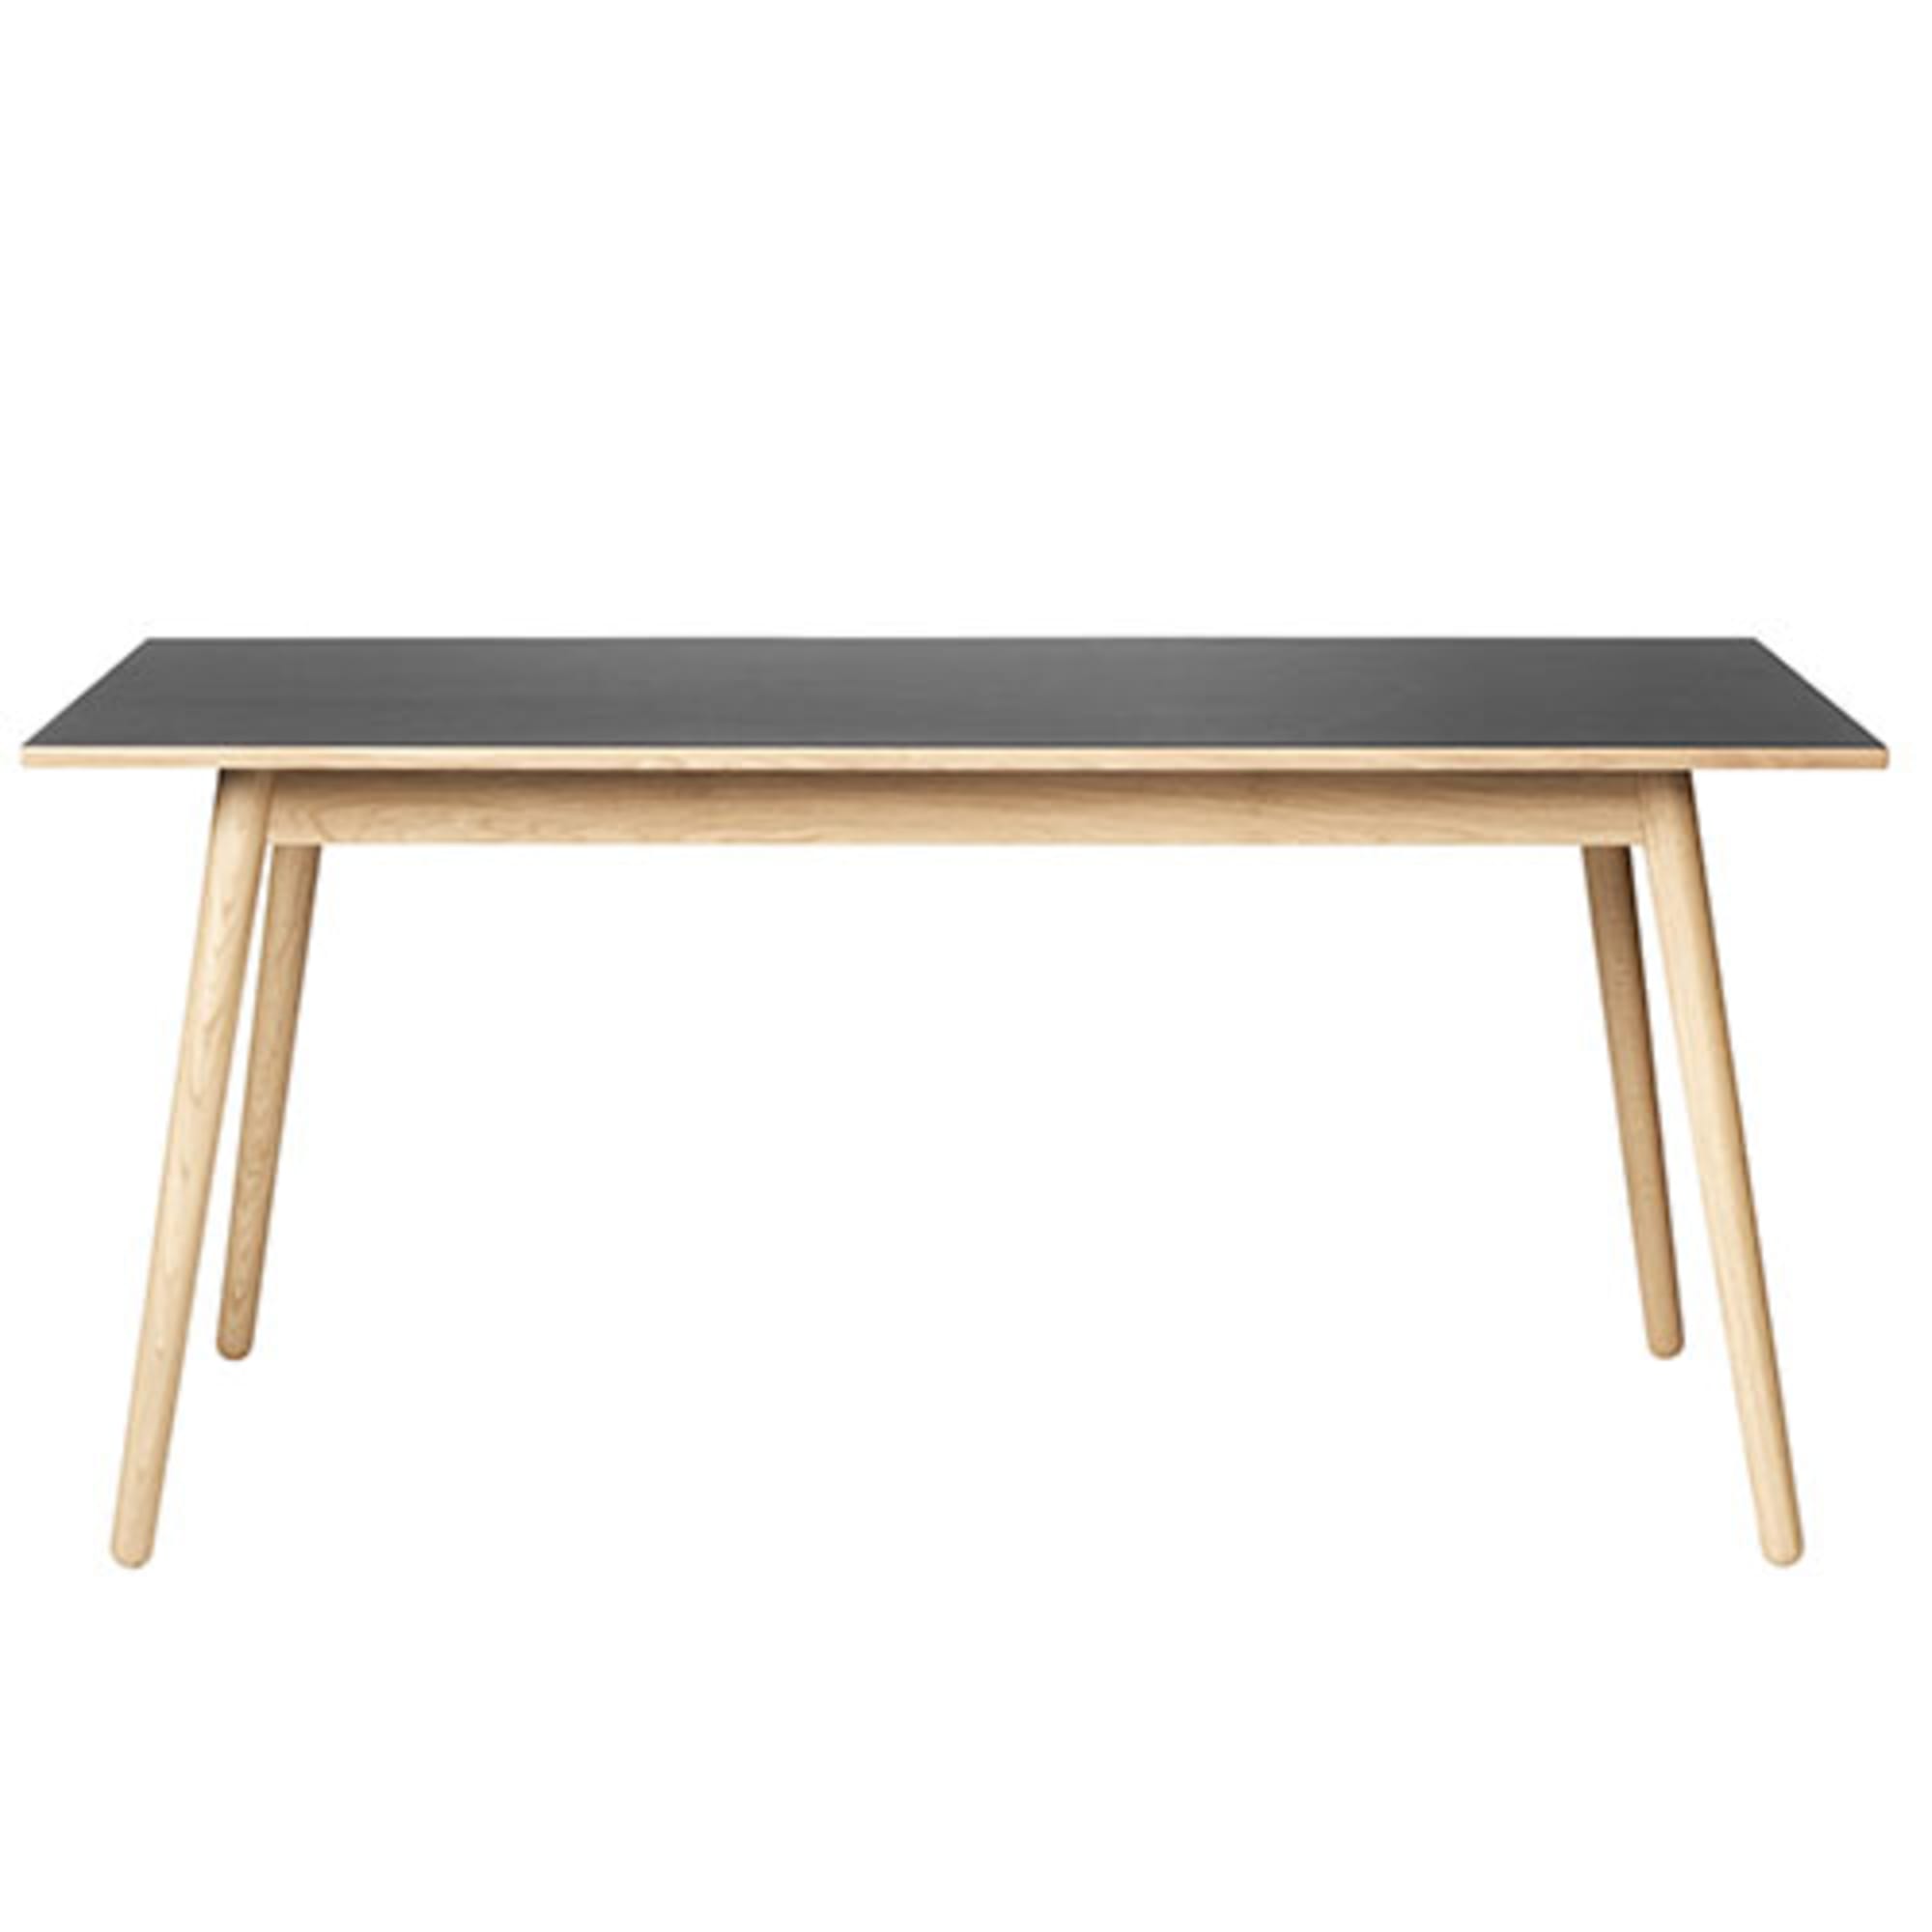 Fdb Møbler C35 C matbord för 8 personer ek, svart linoleum topp, 95x220cm